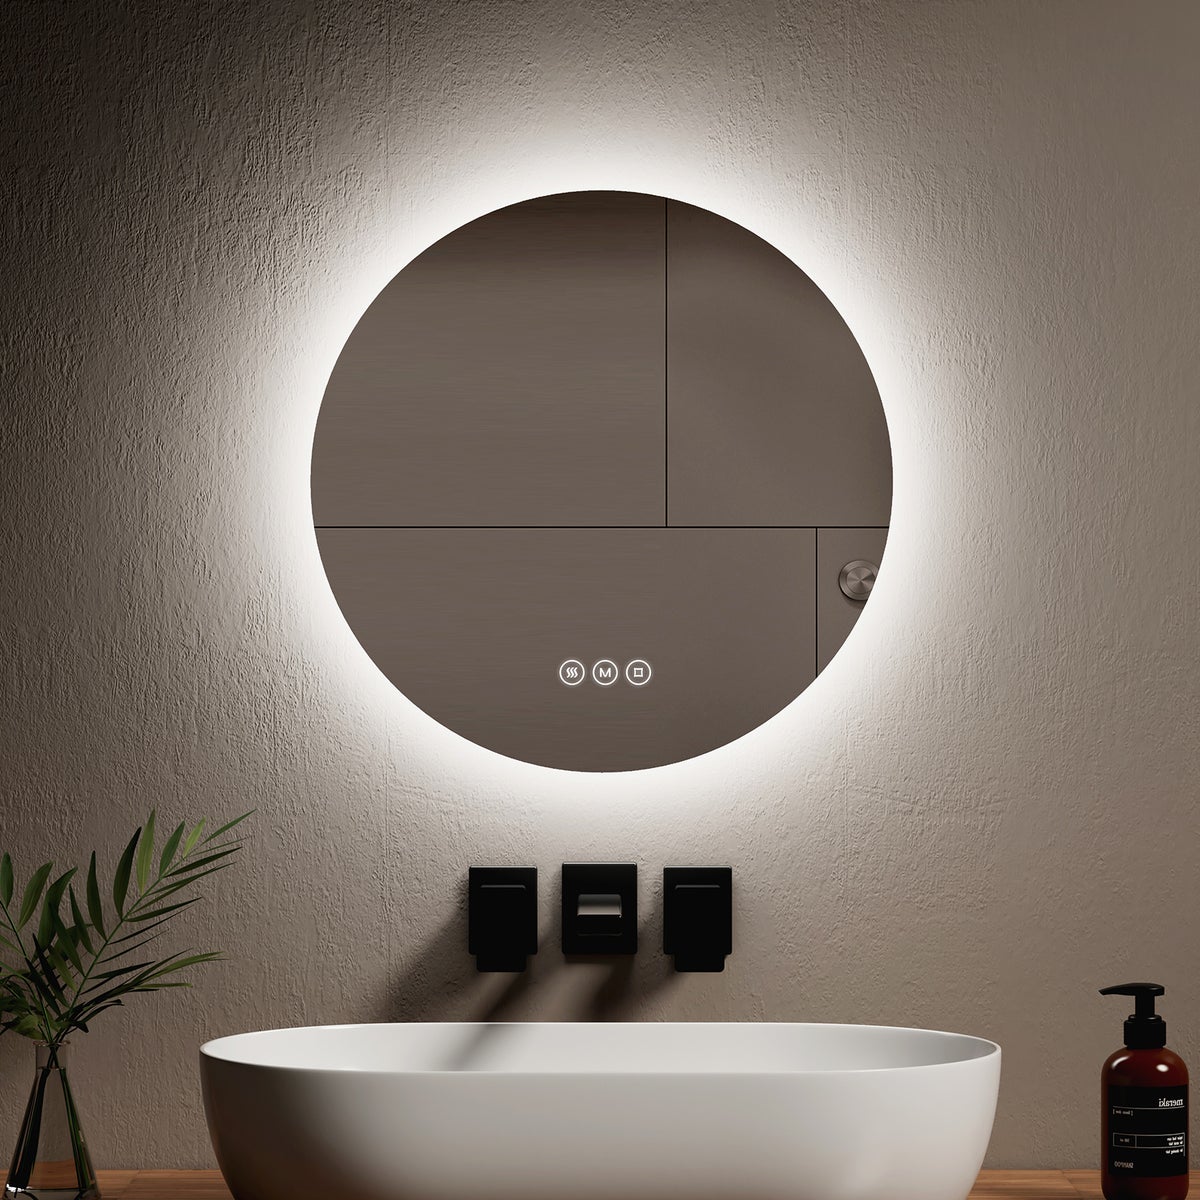 EMKE Badspiegel mit Beleuchtung Antibeschlag  3 Lichtfarben Dimmbar,60 cm